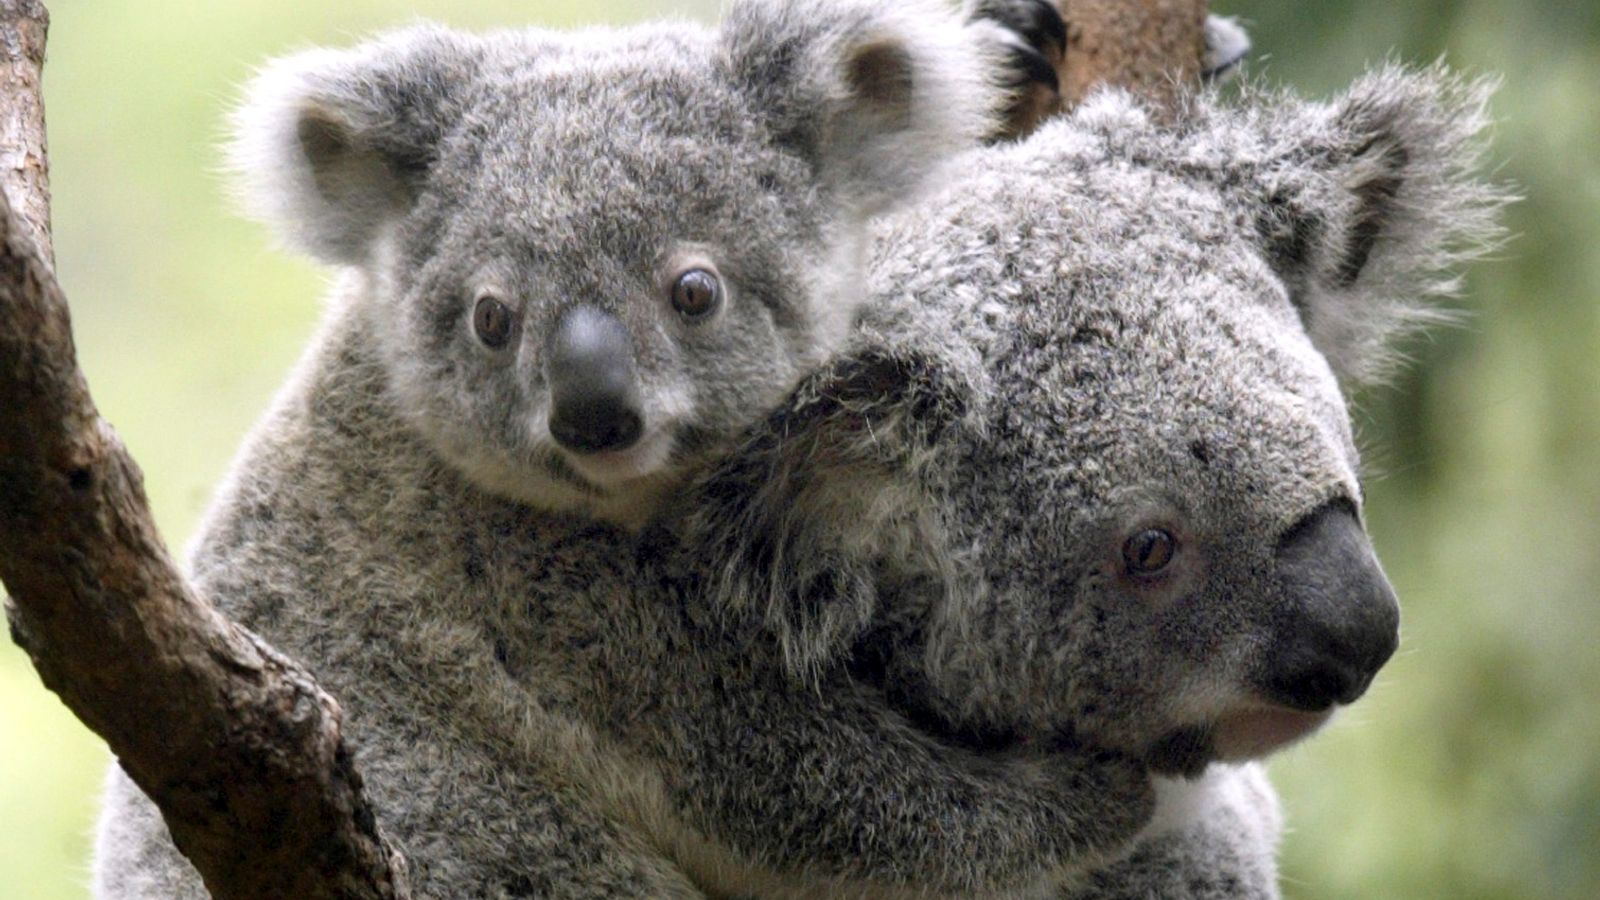 Australia classifies koalas at eastern coast as endangered